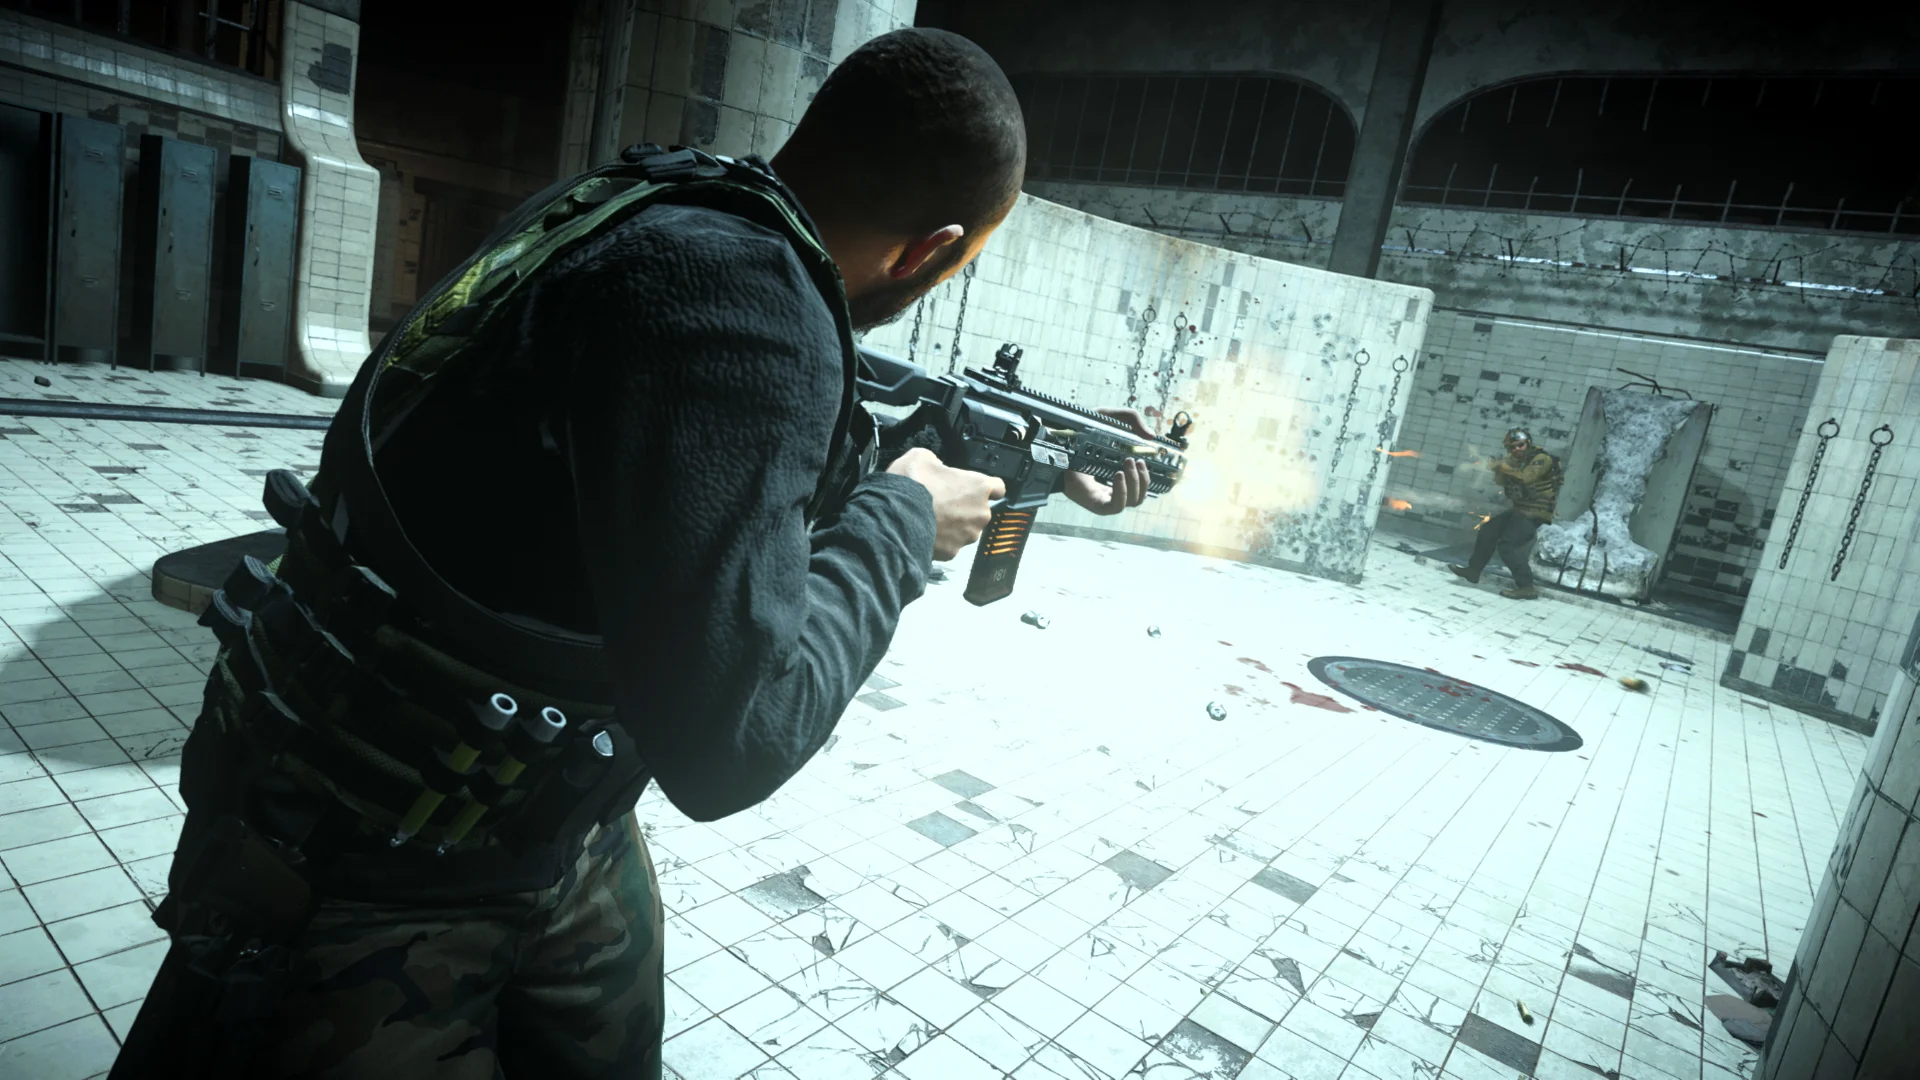 Call of Duty: Warzone вышла 10 марта, преодолела отметку в 60 миллионов игроков меньше чем за два месяца и, похоже, не планирует сбавлять обороты. Чтобы помочь новым игрокам, Activision выпустила подробное руководство по игре. Мы изучили его, сравнили с тактиками, которые выработали игроки, и собрали для вас самые полезные советы. В этом гайде речь пойдет о том, как можно облегчить себе поединок в ГУЛАГе.